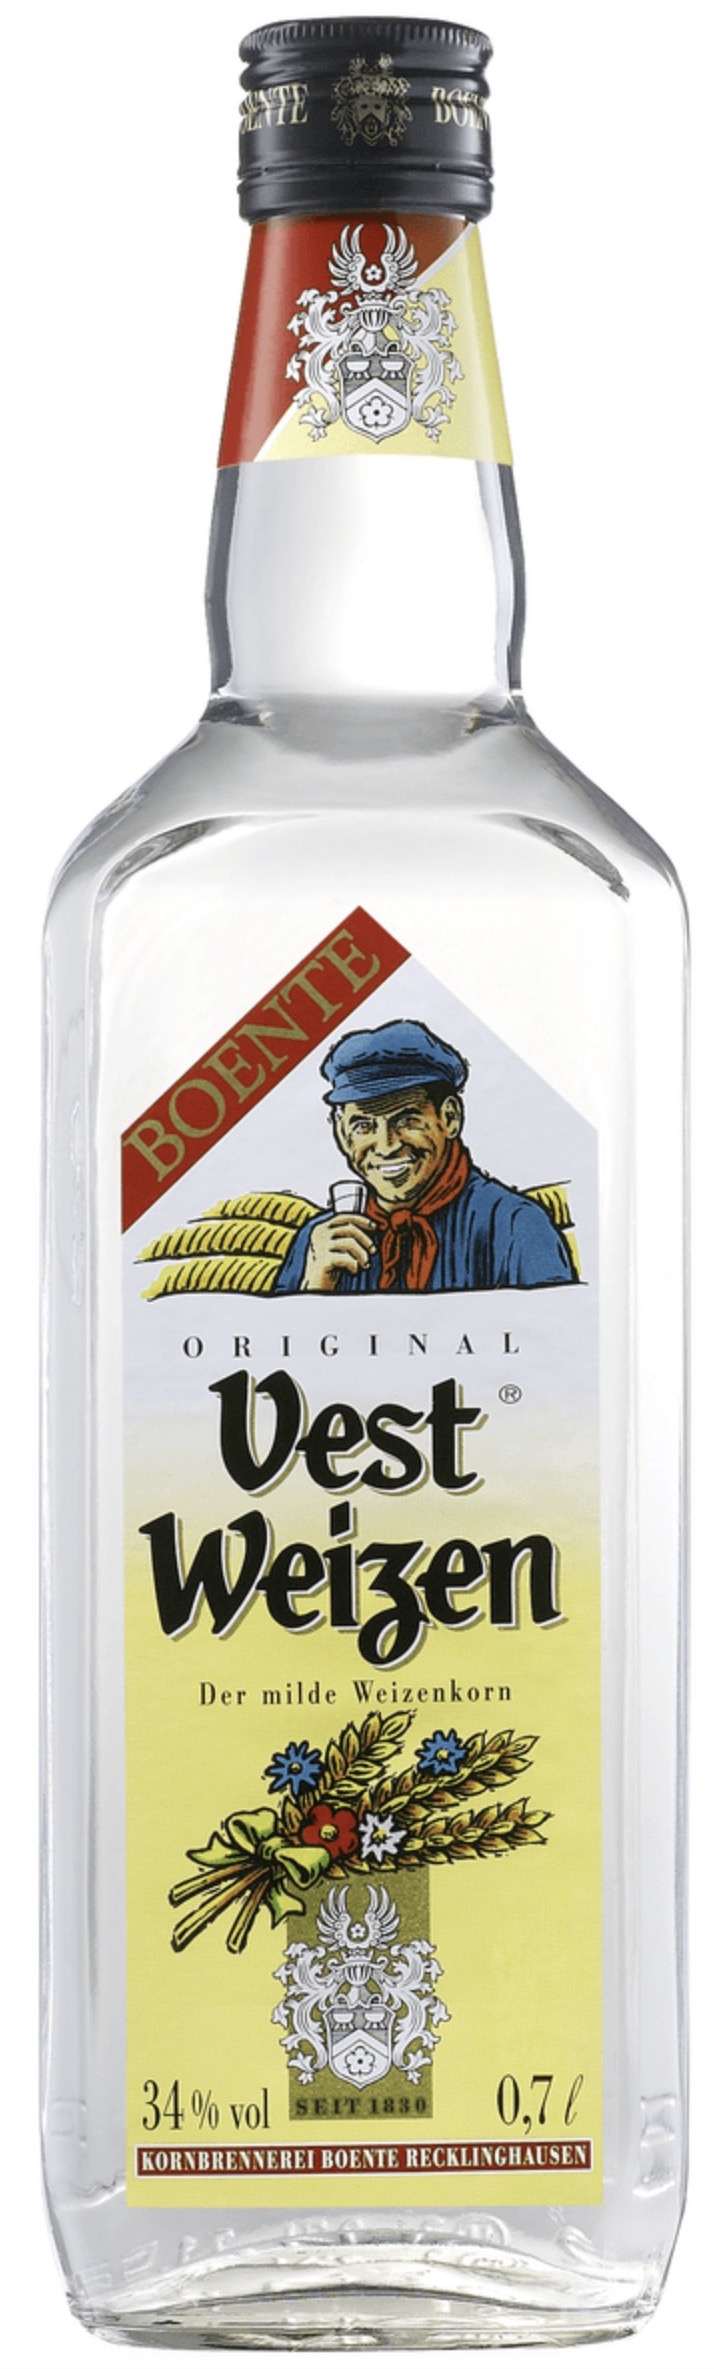 Boentes Vest Weizen 34% vol. 0,7L